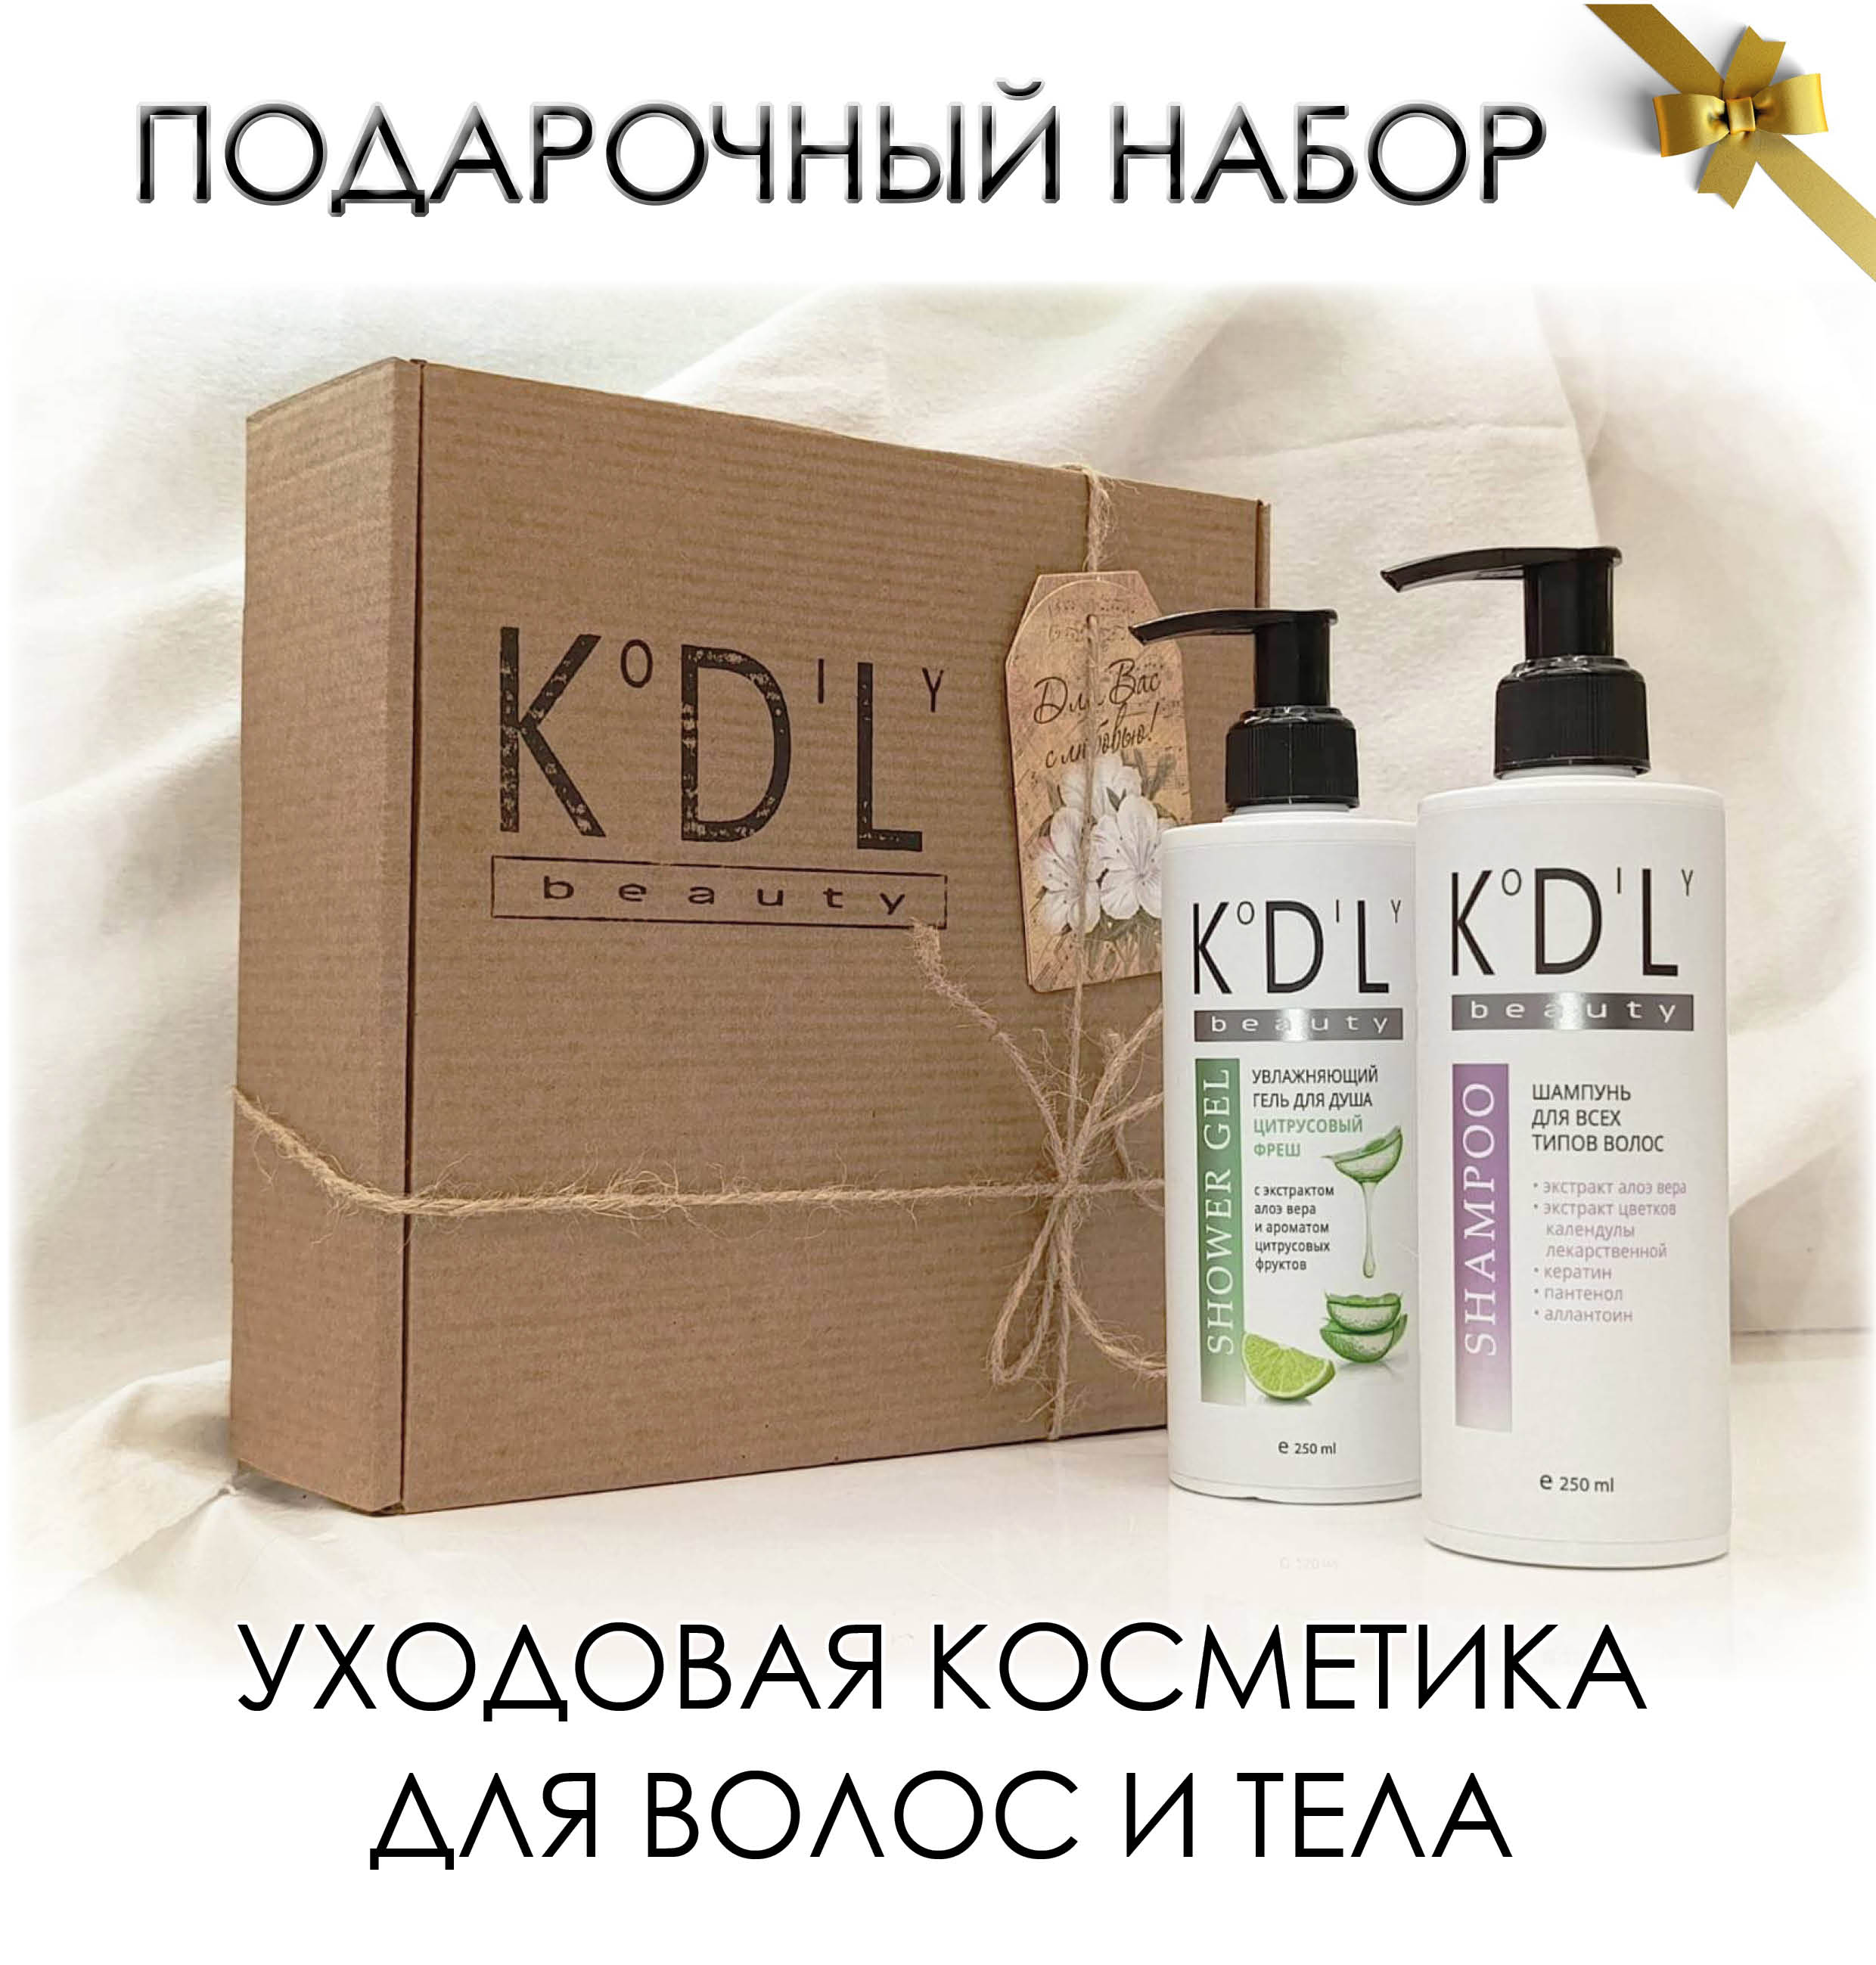 Бьюти набор подарочный универсальный KoDiLy beauty шампунь и гель для душа 250 мл